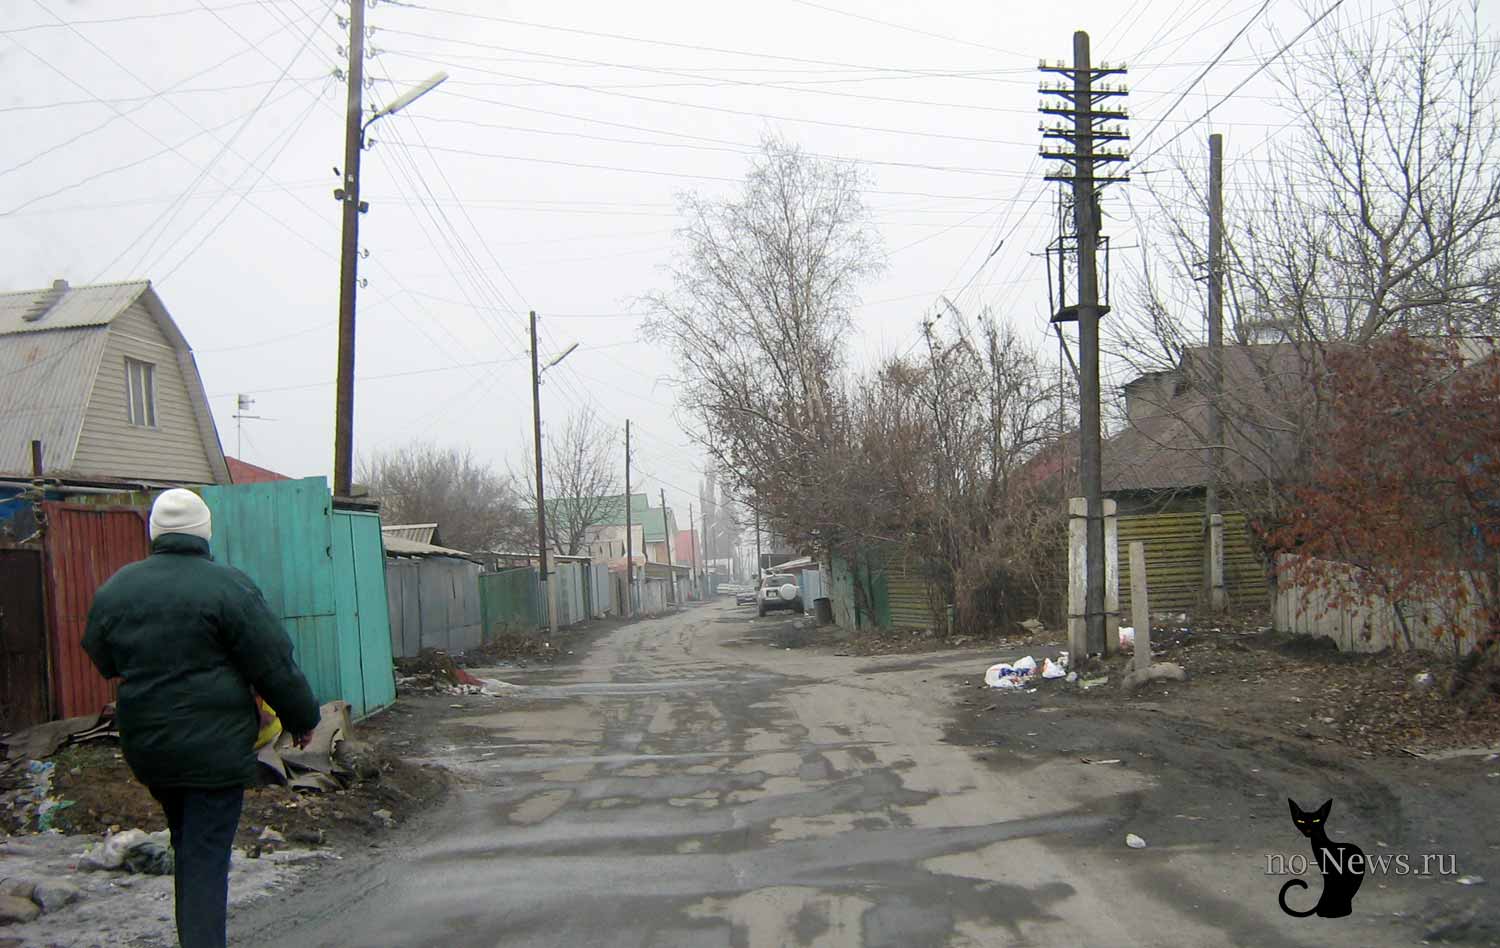 Алматы, улица Лазарева - мы живем в Азии... такие дороги!